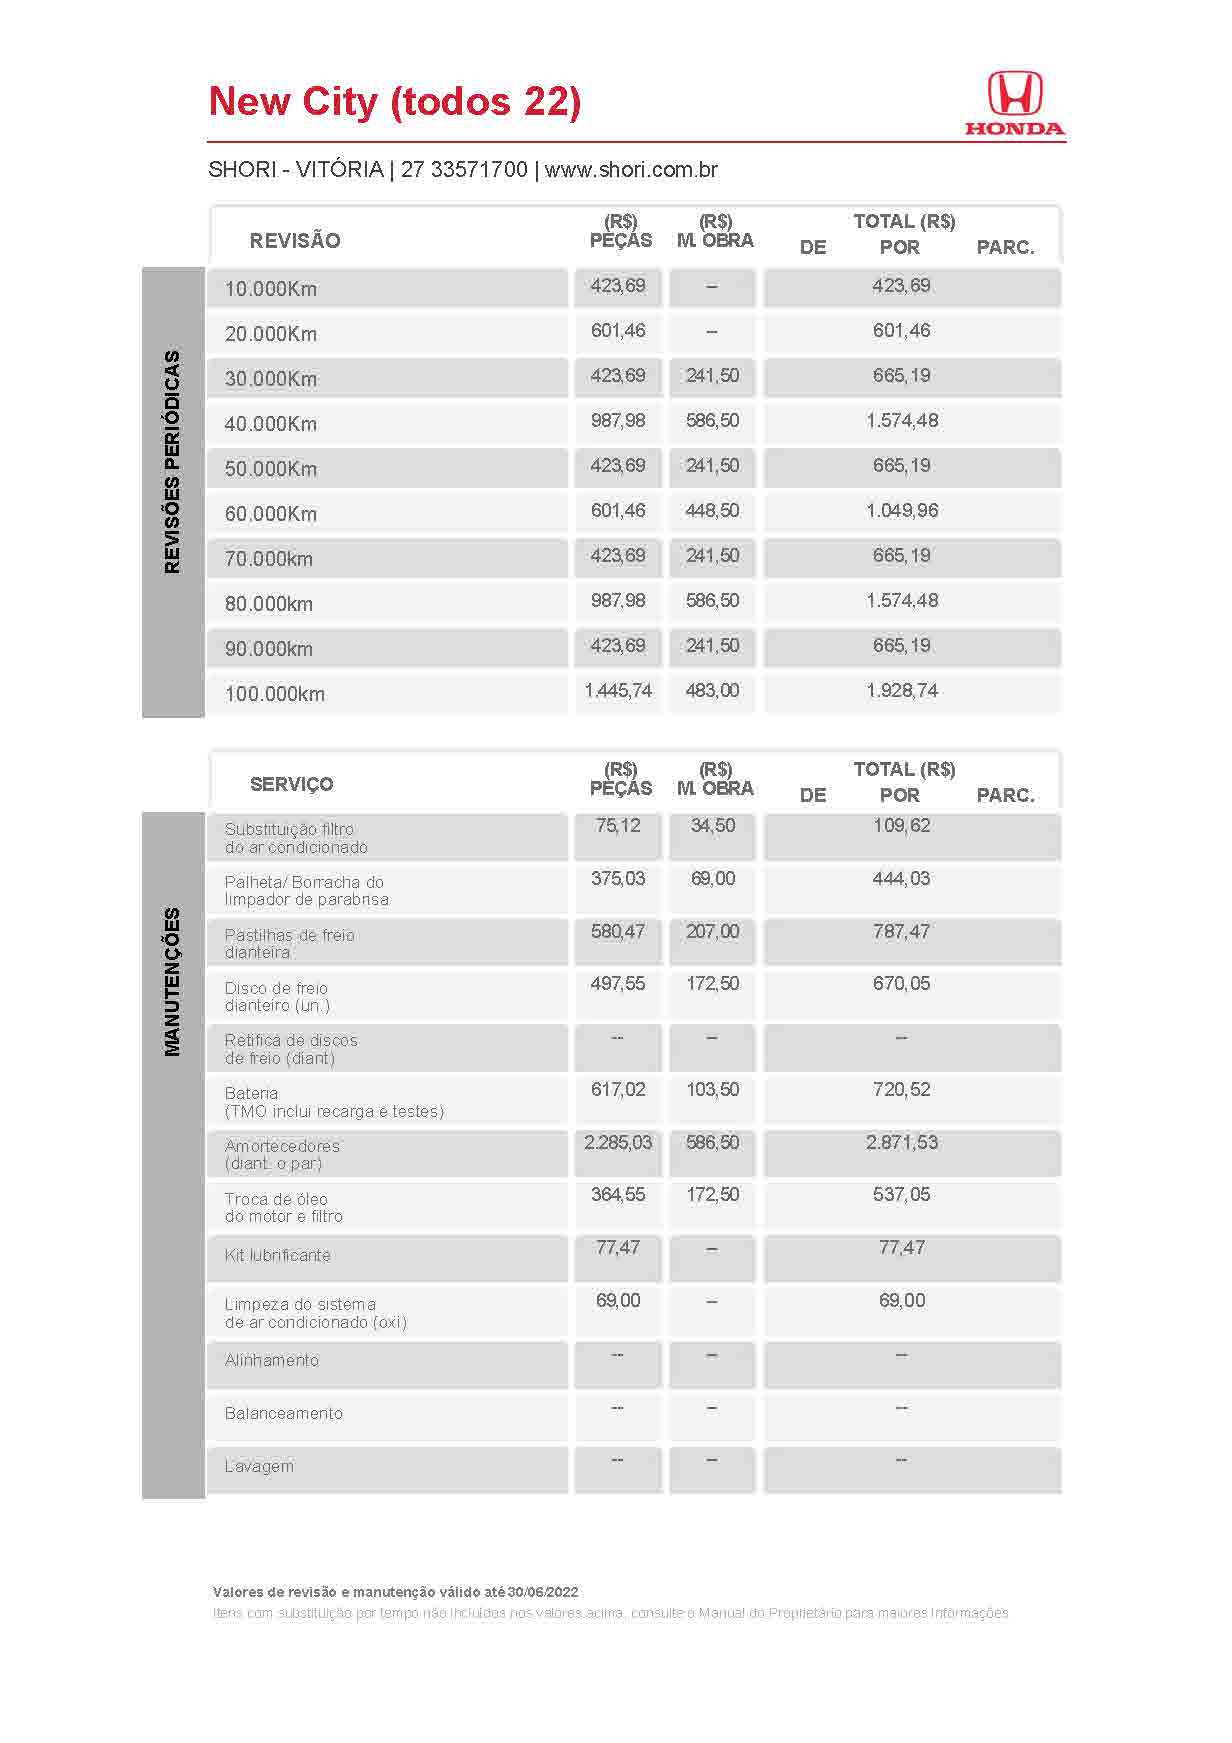 Honda Shori Tabela de Revisão new city todos 22 2022 06 30